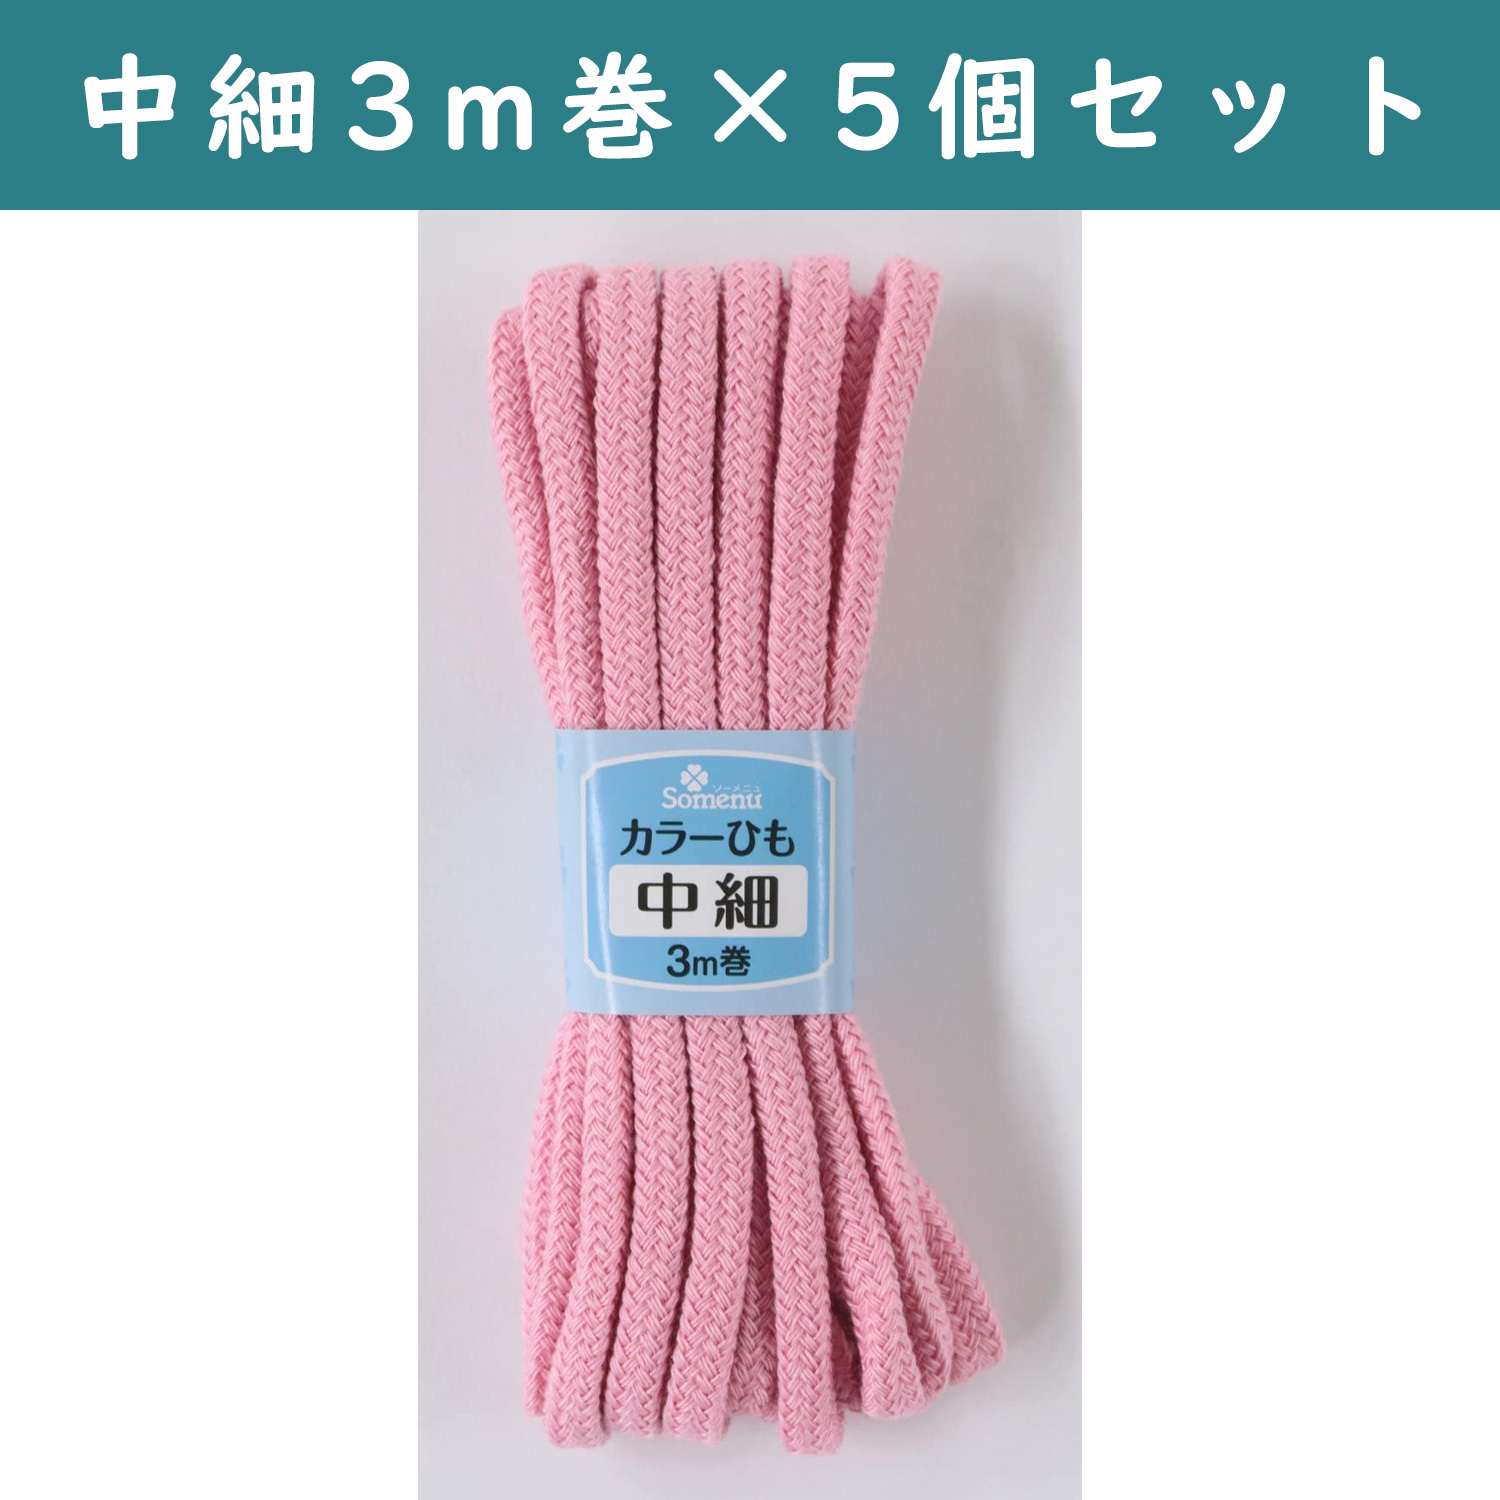 ■【5個】CL26-150-5set カラーひも 中細 3m巻 ピンク 5個セット (セット)